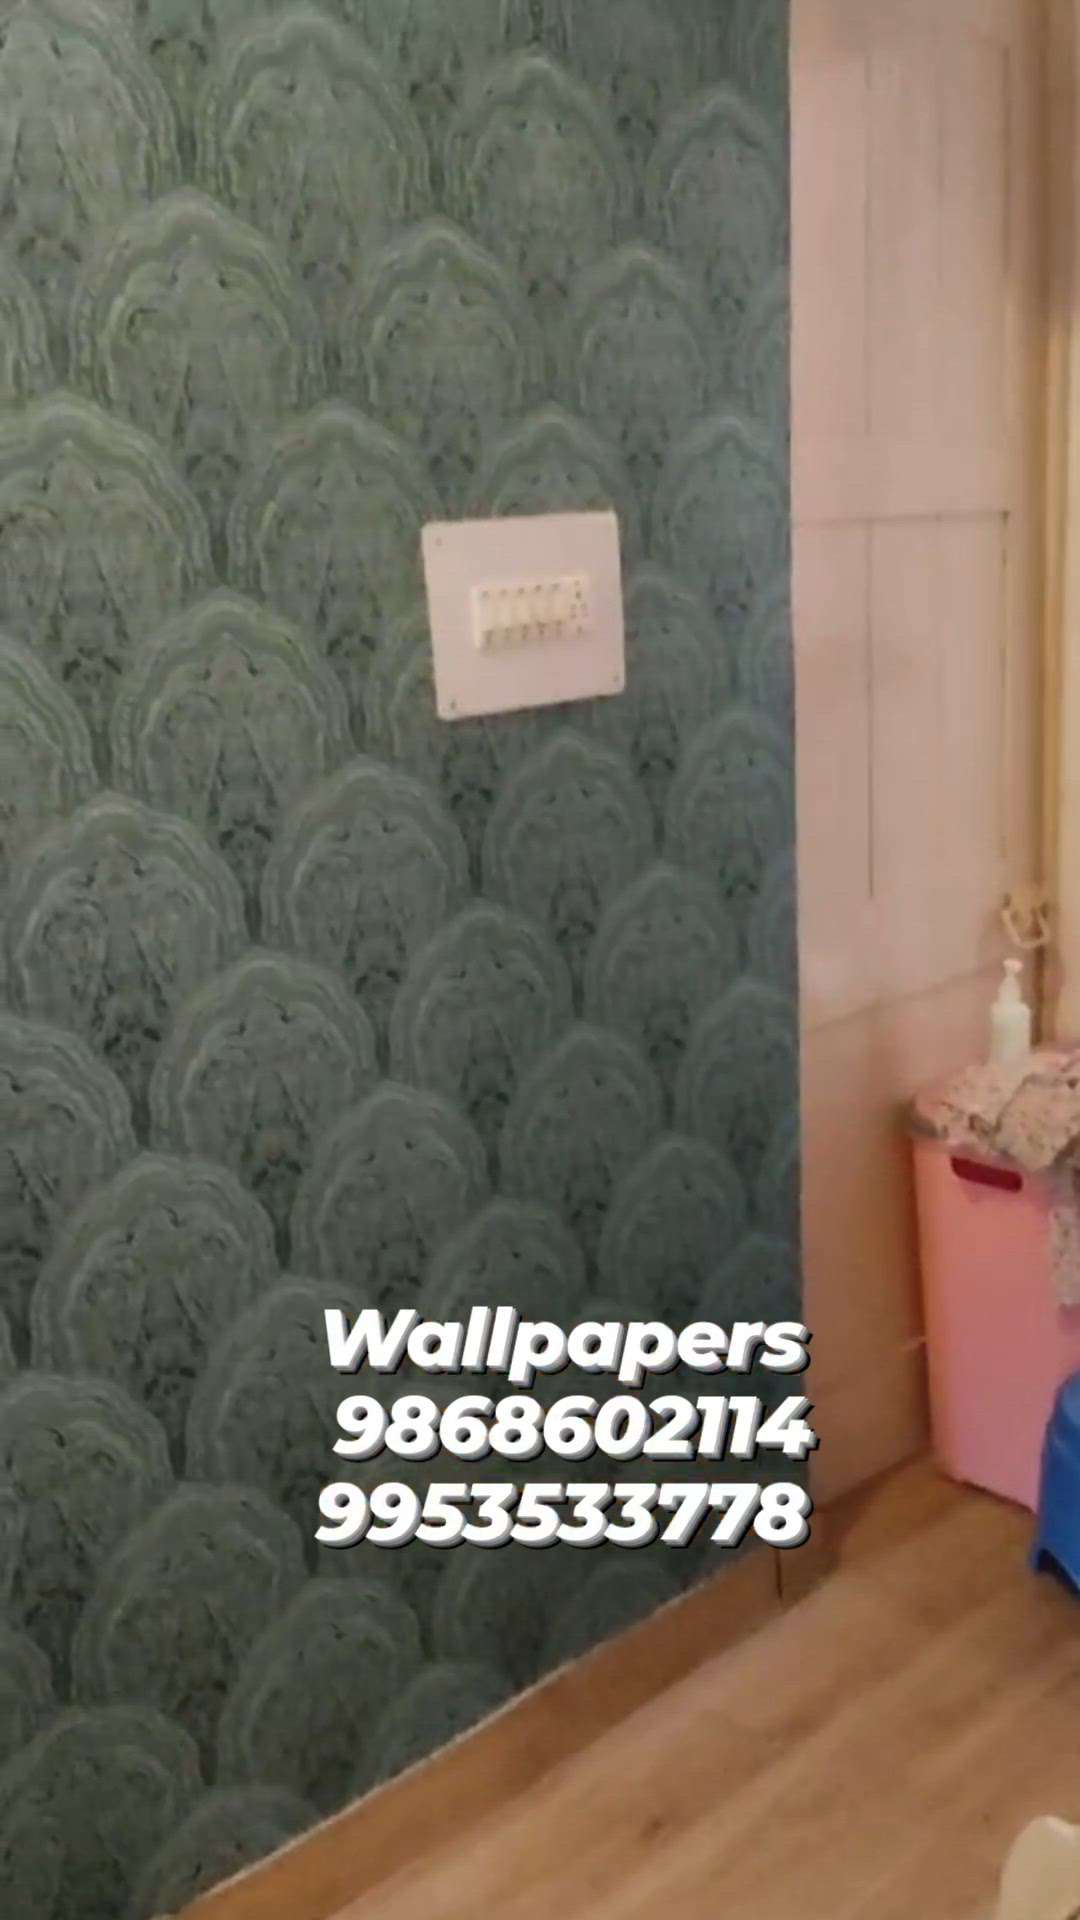 Excel 3D WALLPAPERS 
9868602114 
9953533778